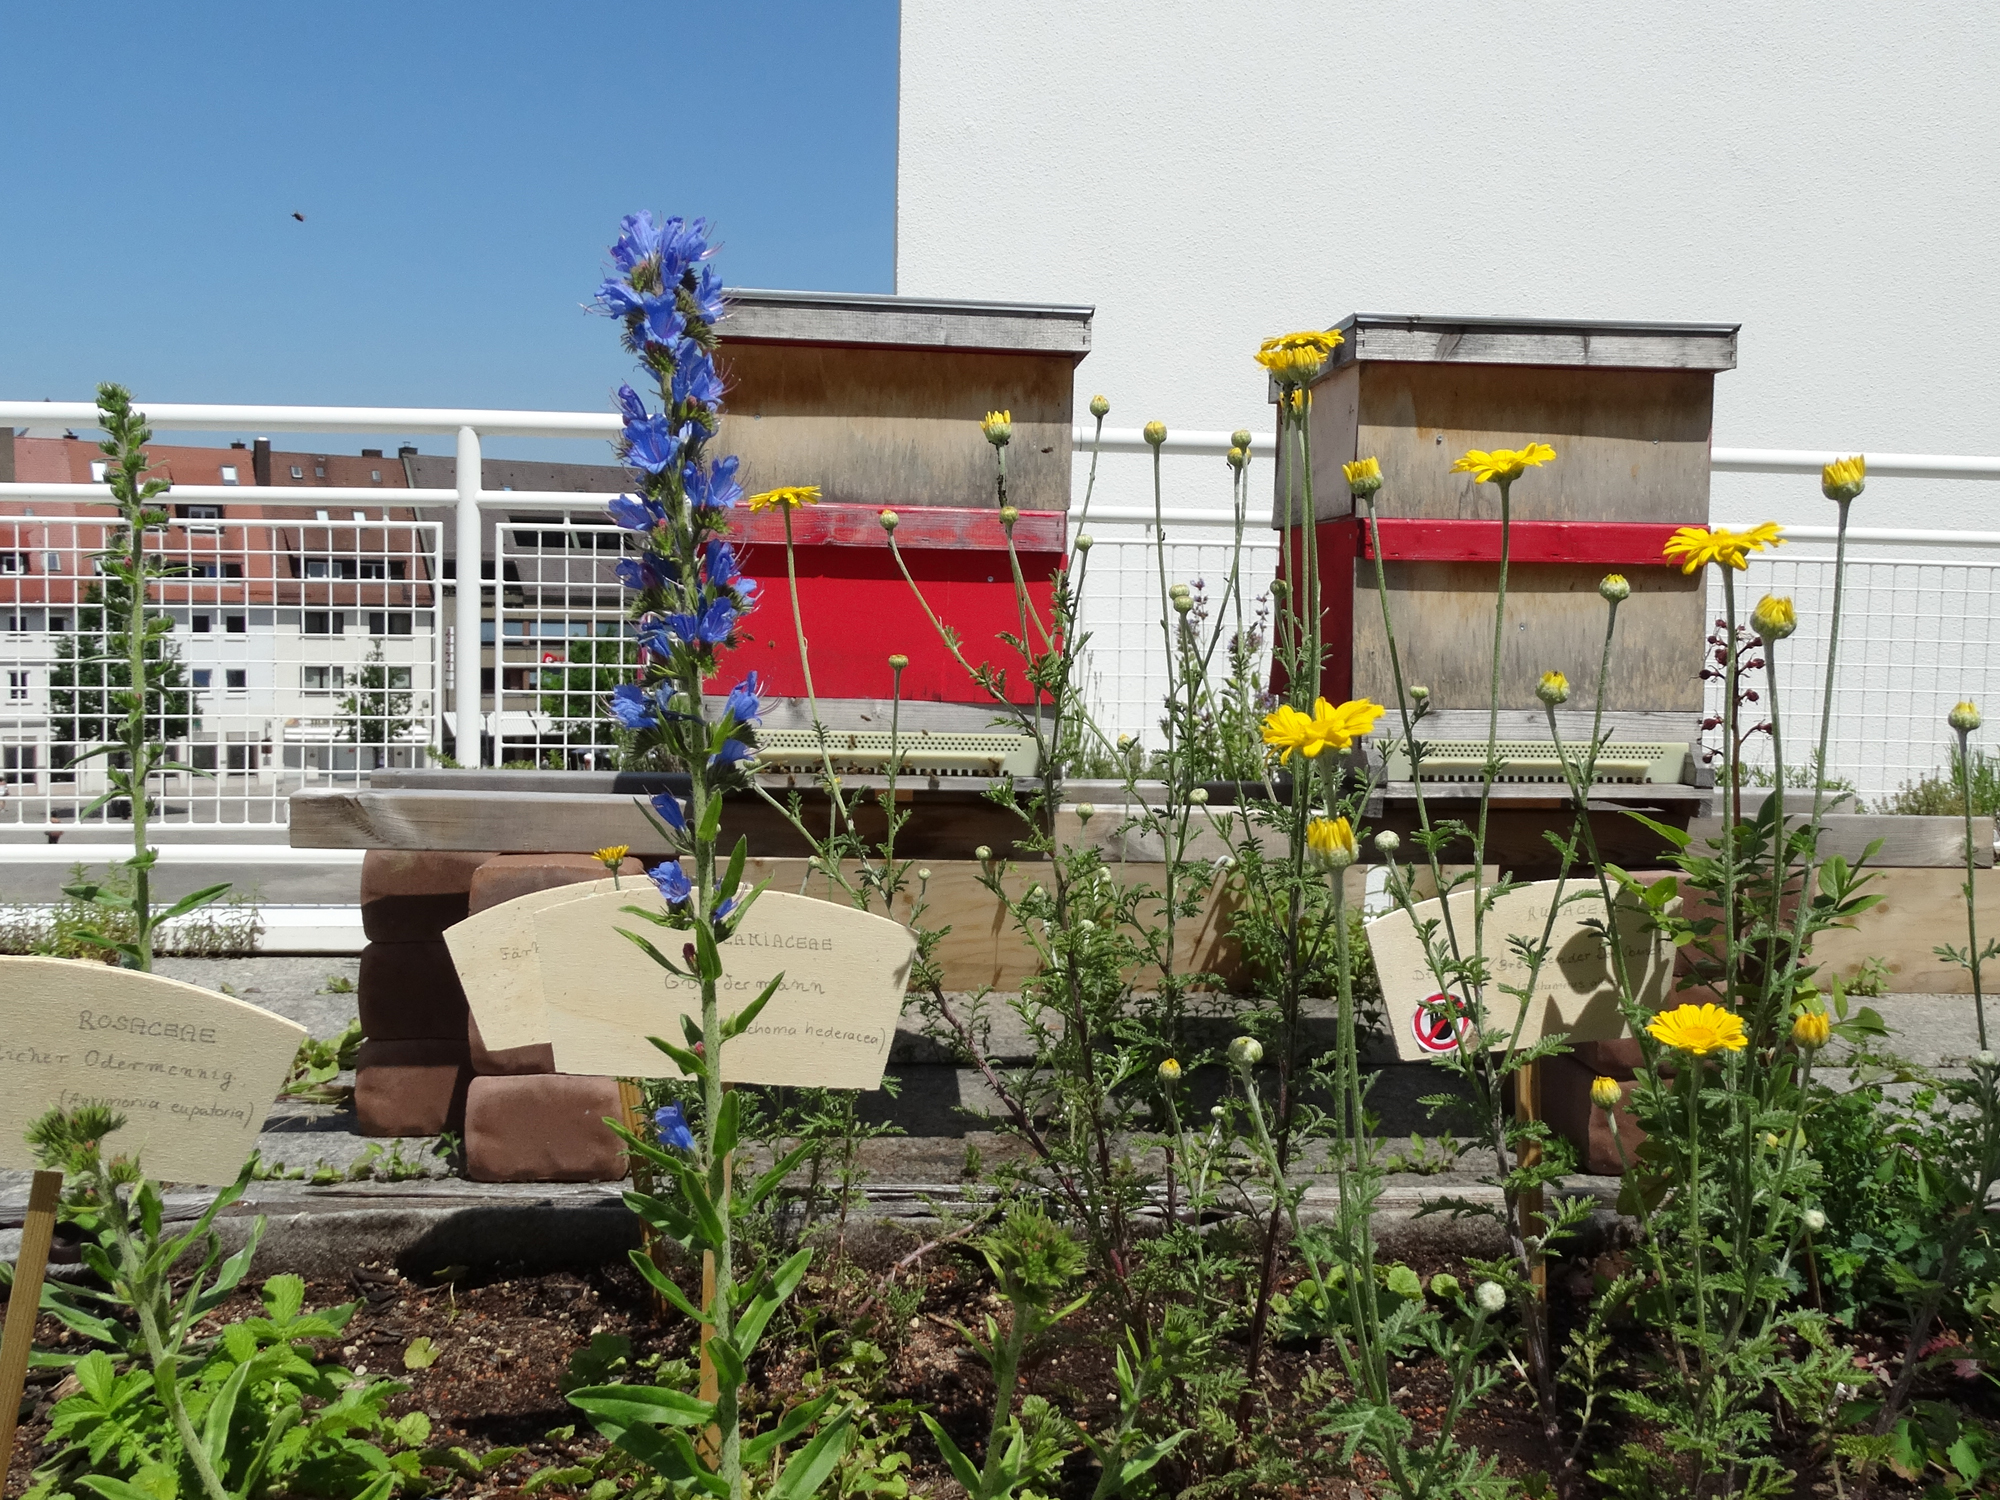 Auf der Stadthaus-Terrasse stehen zwei Bienenkästen hinter bepflanzten Kübeln. 